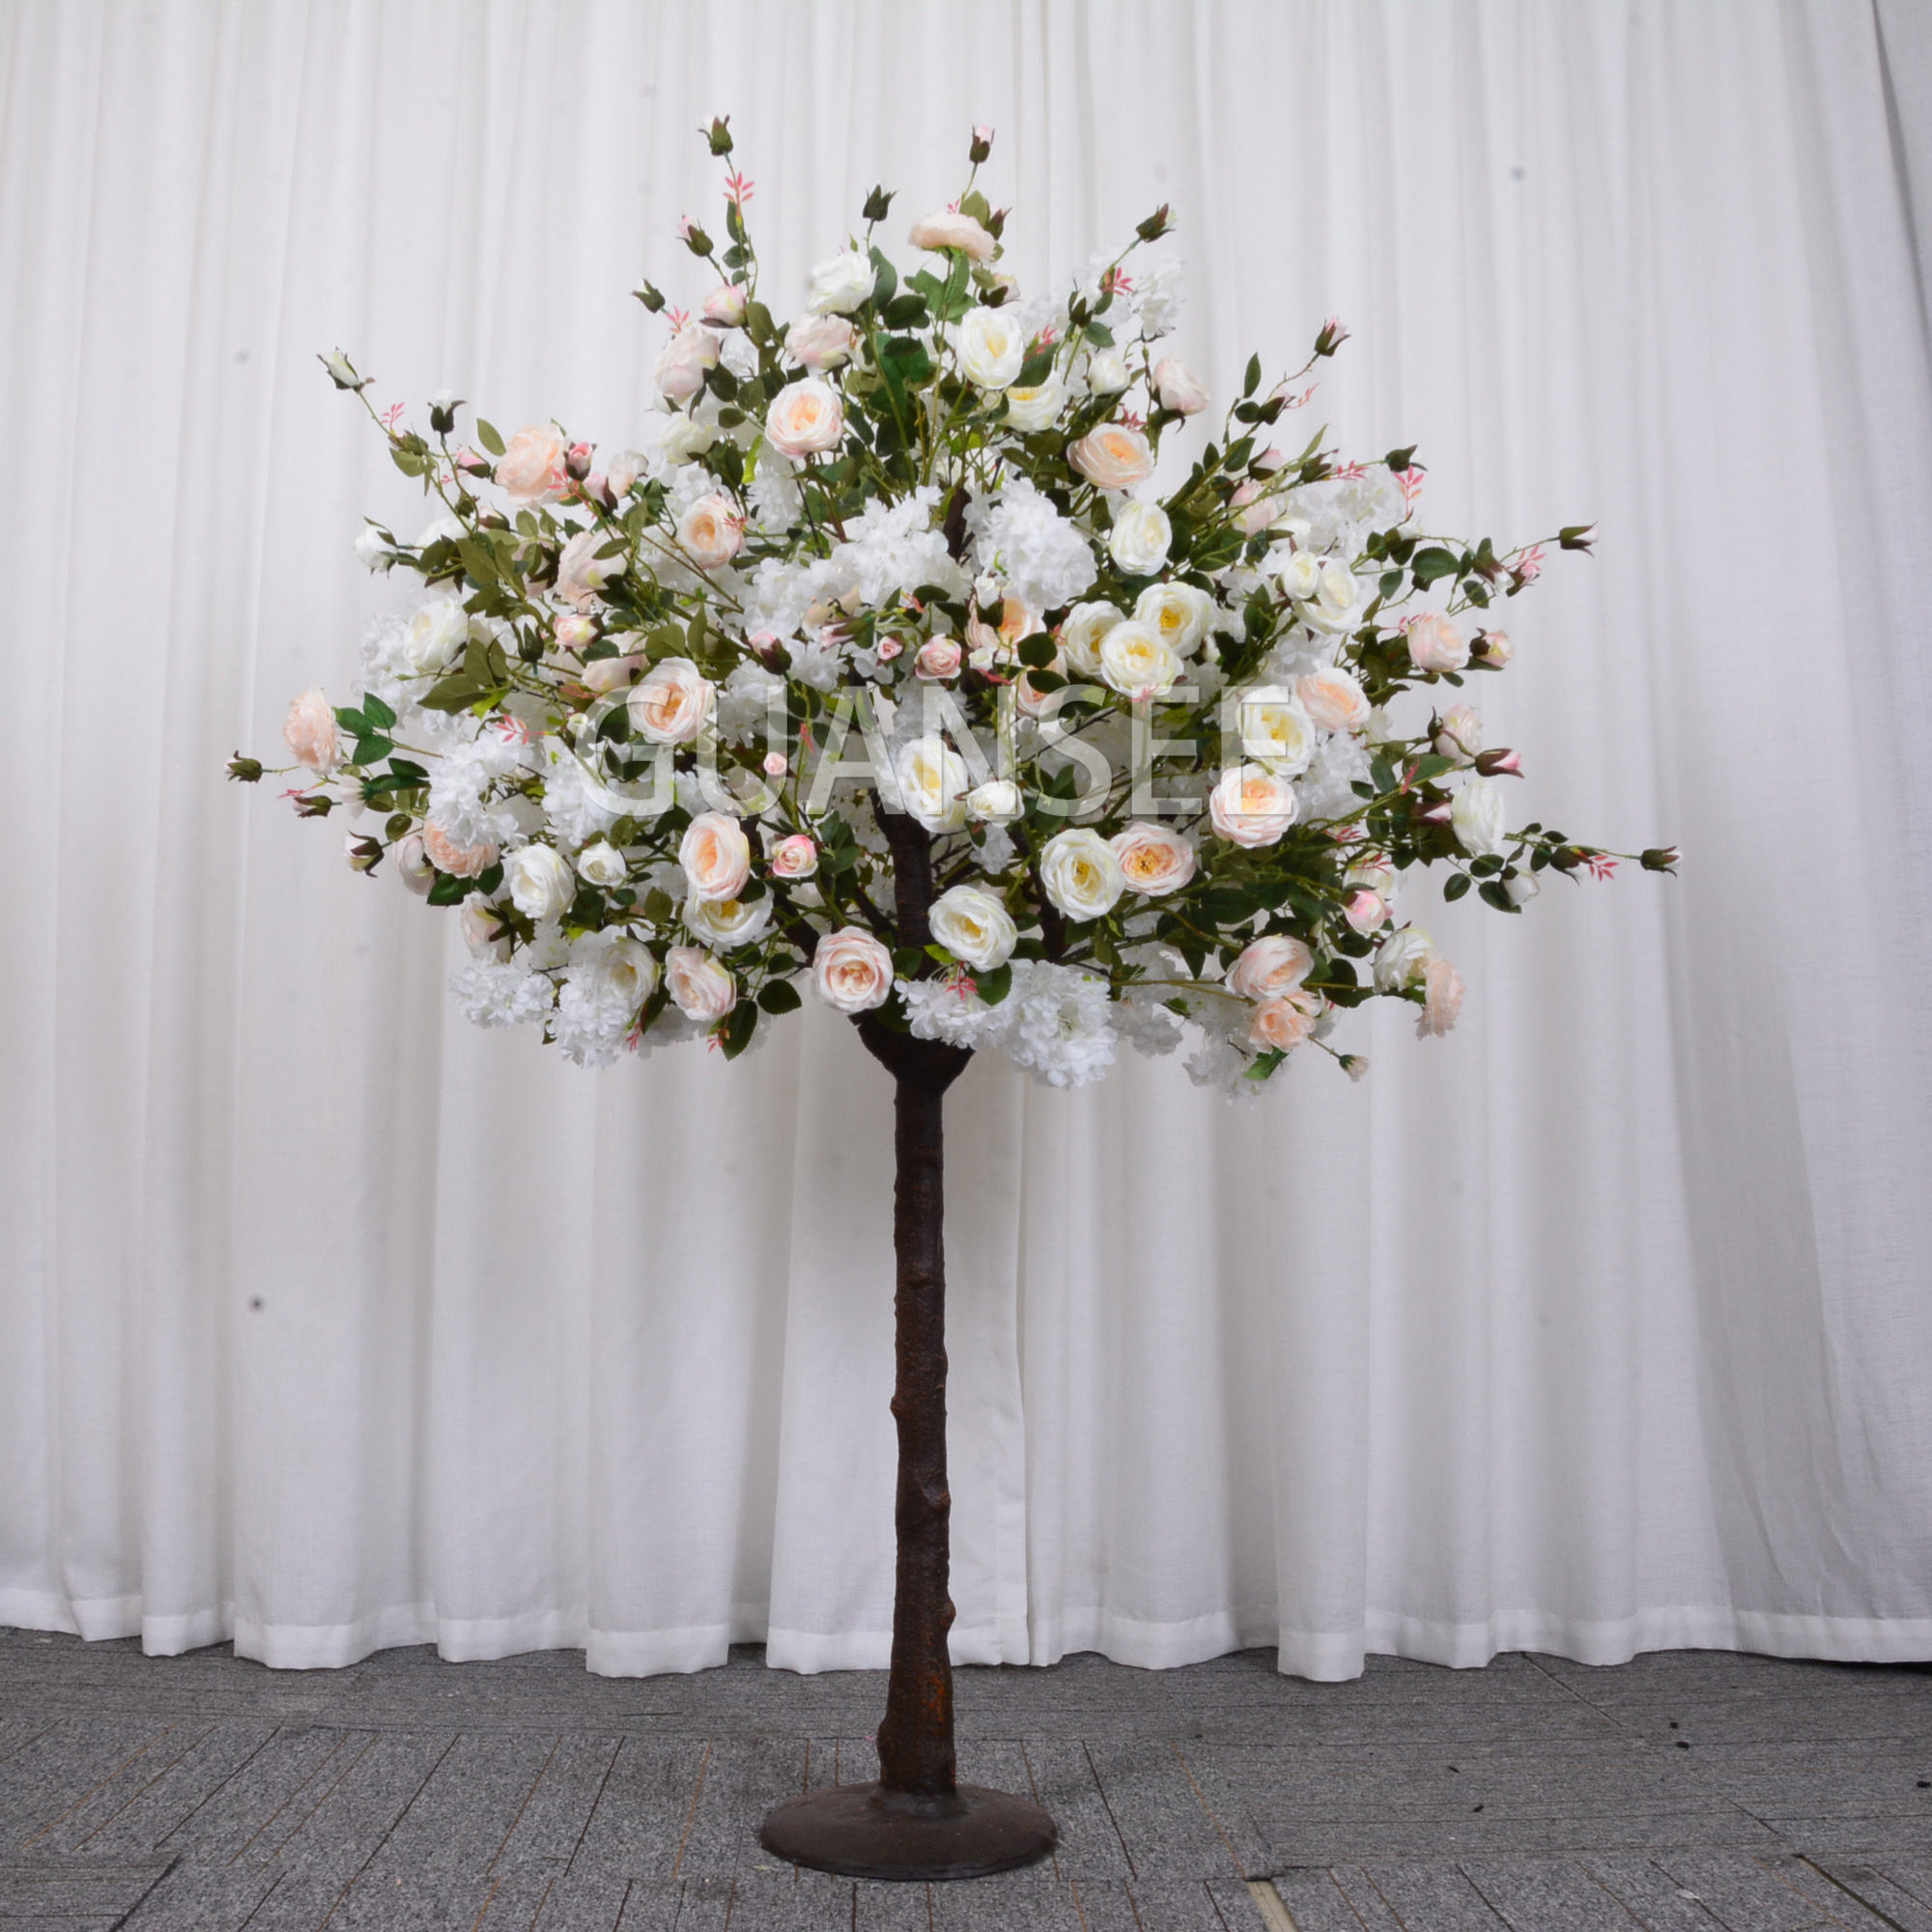 人工牡丹の花の木と桜の花を混ぜた結婚式のセンターピースイベントパーティーの装飾